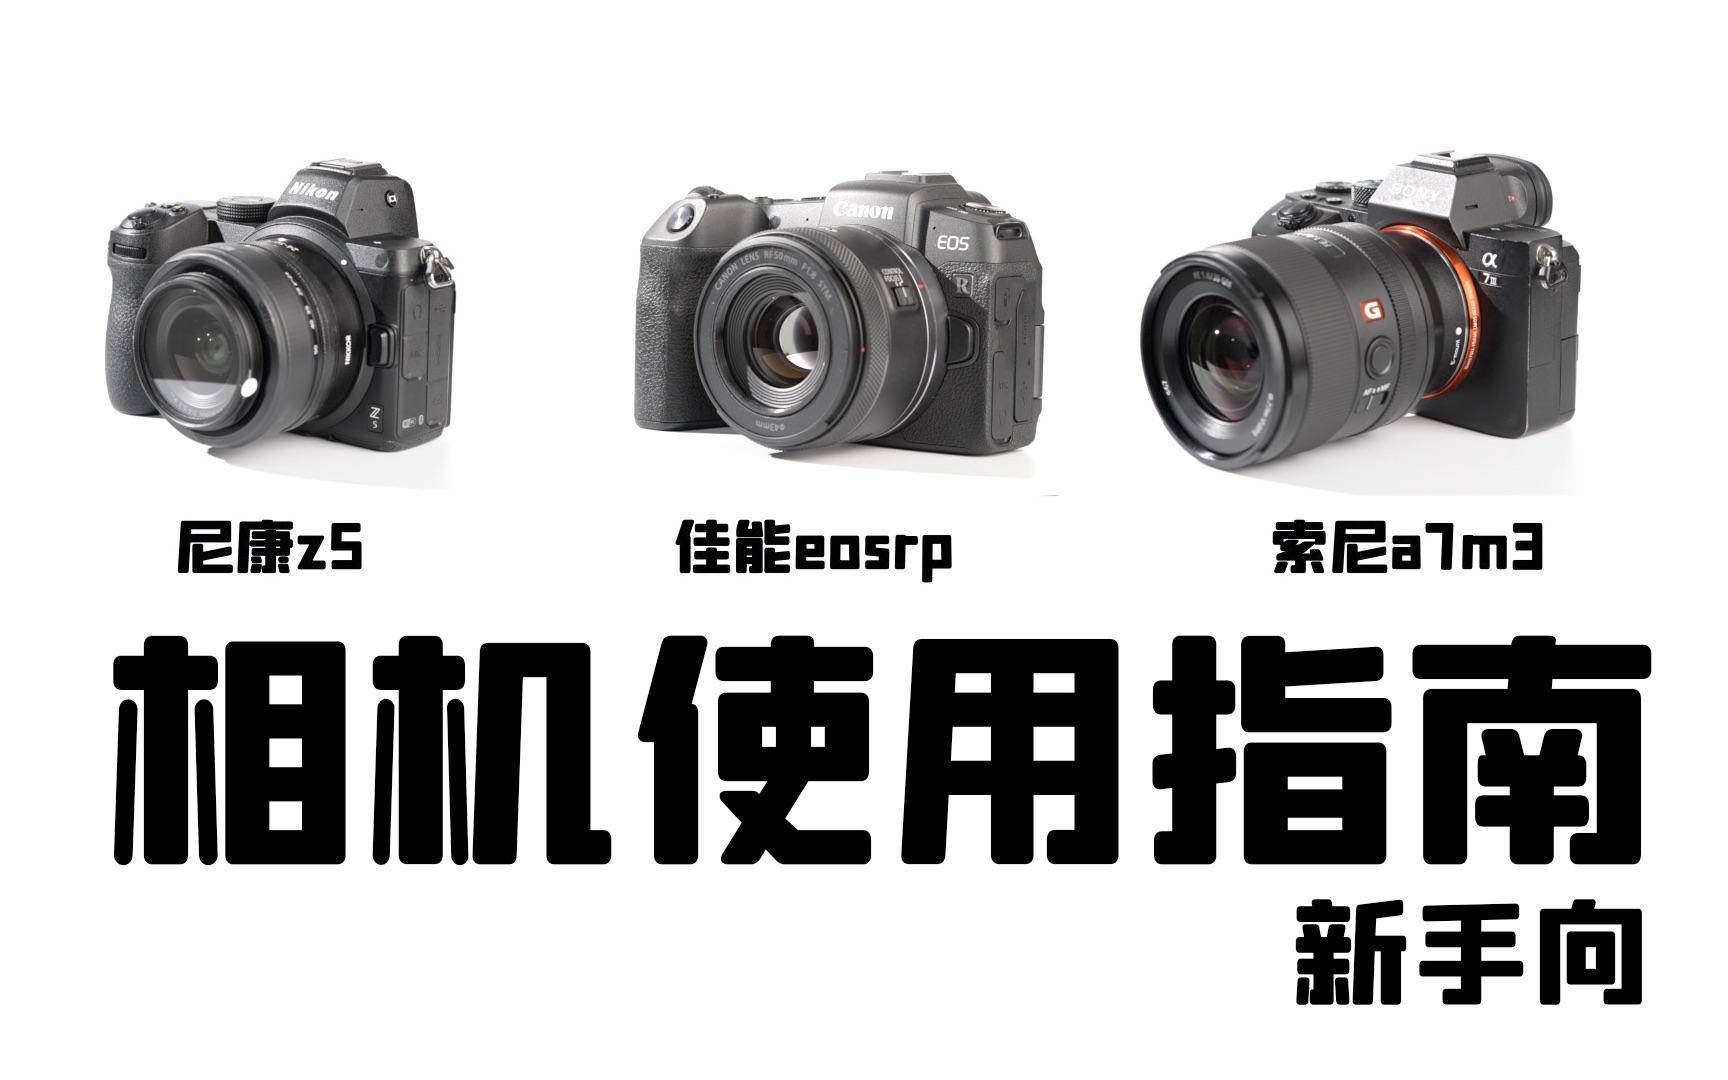 【从零学摄影05期】相机使用入门教程 | 以尼康z5、佳能eosRP、索尼a7m3为例 | 相机教程